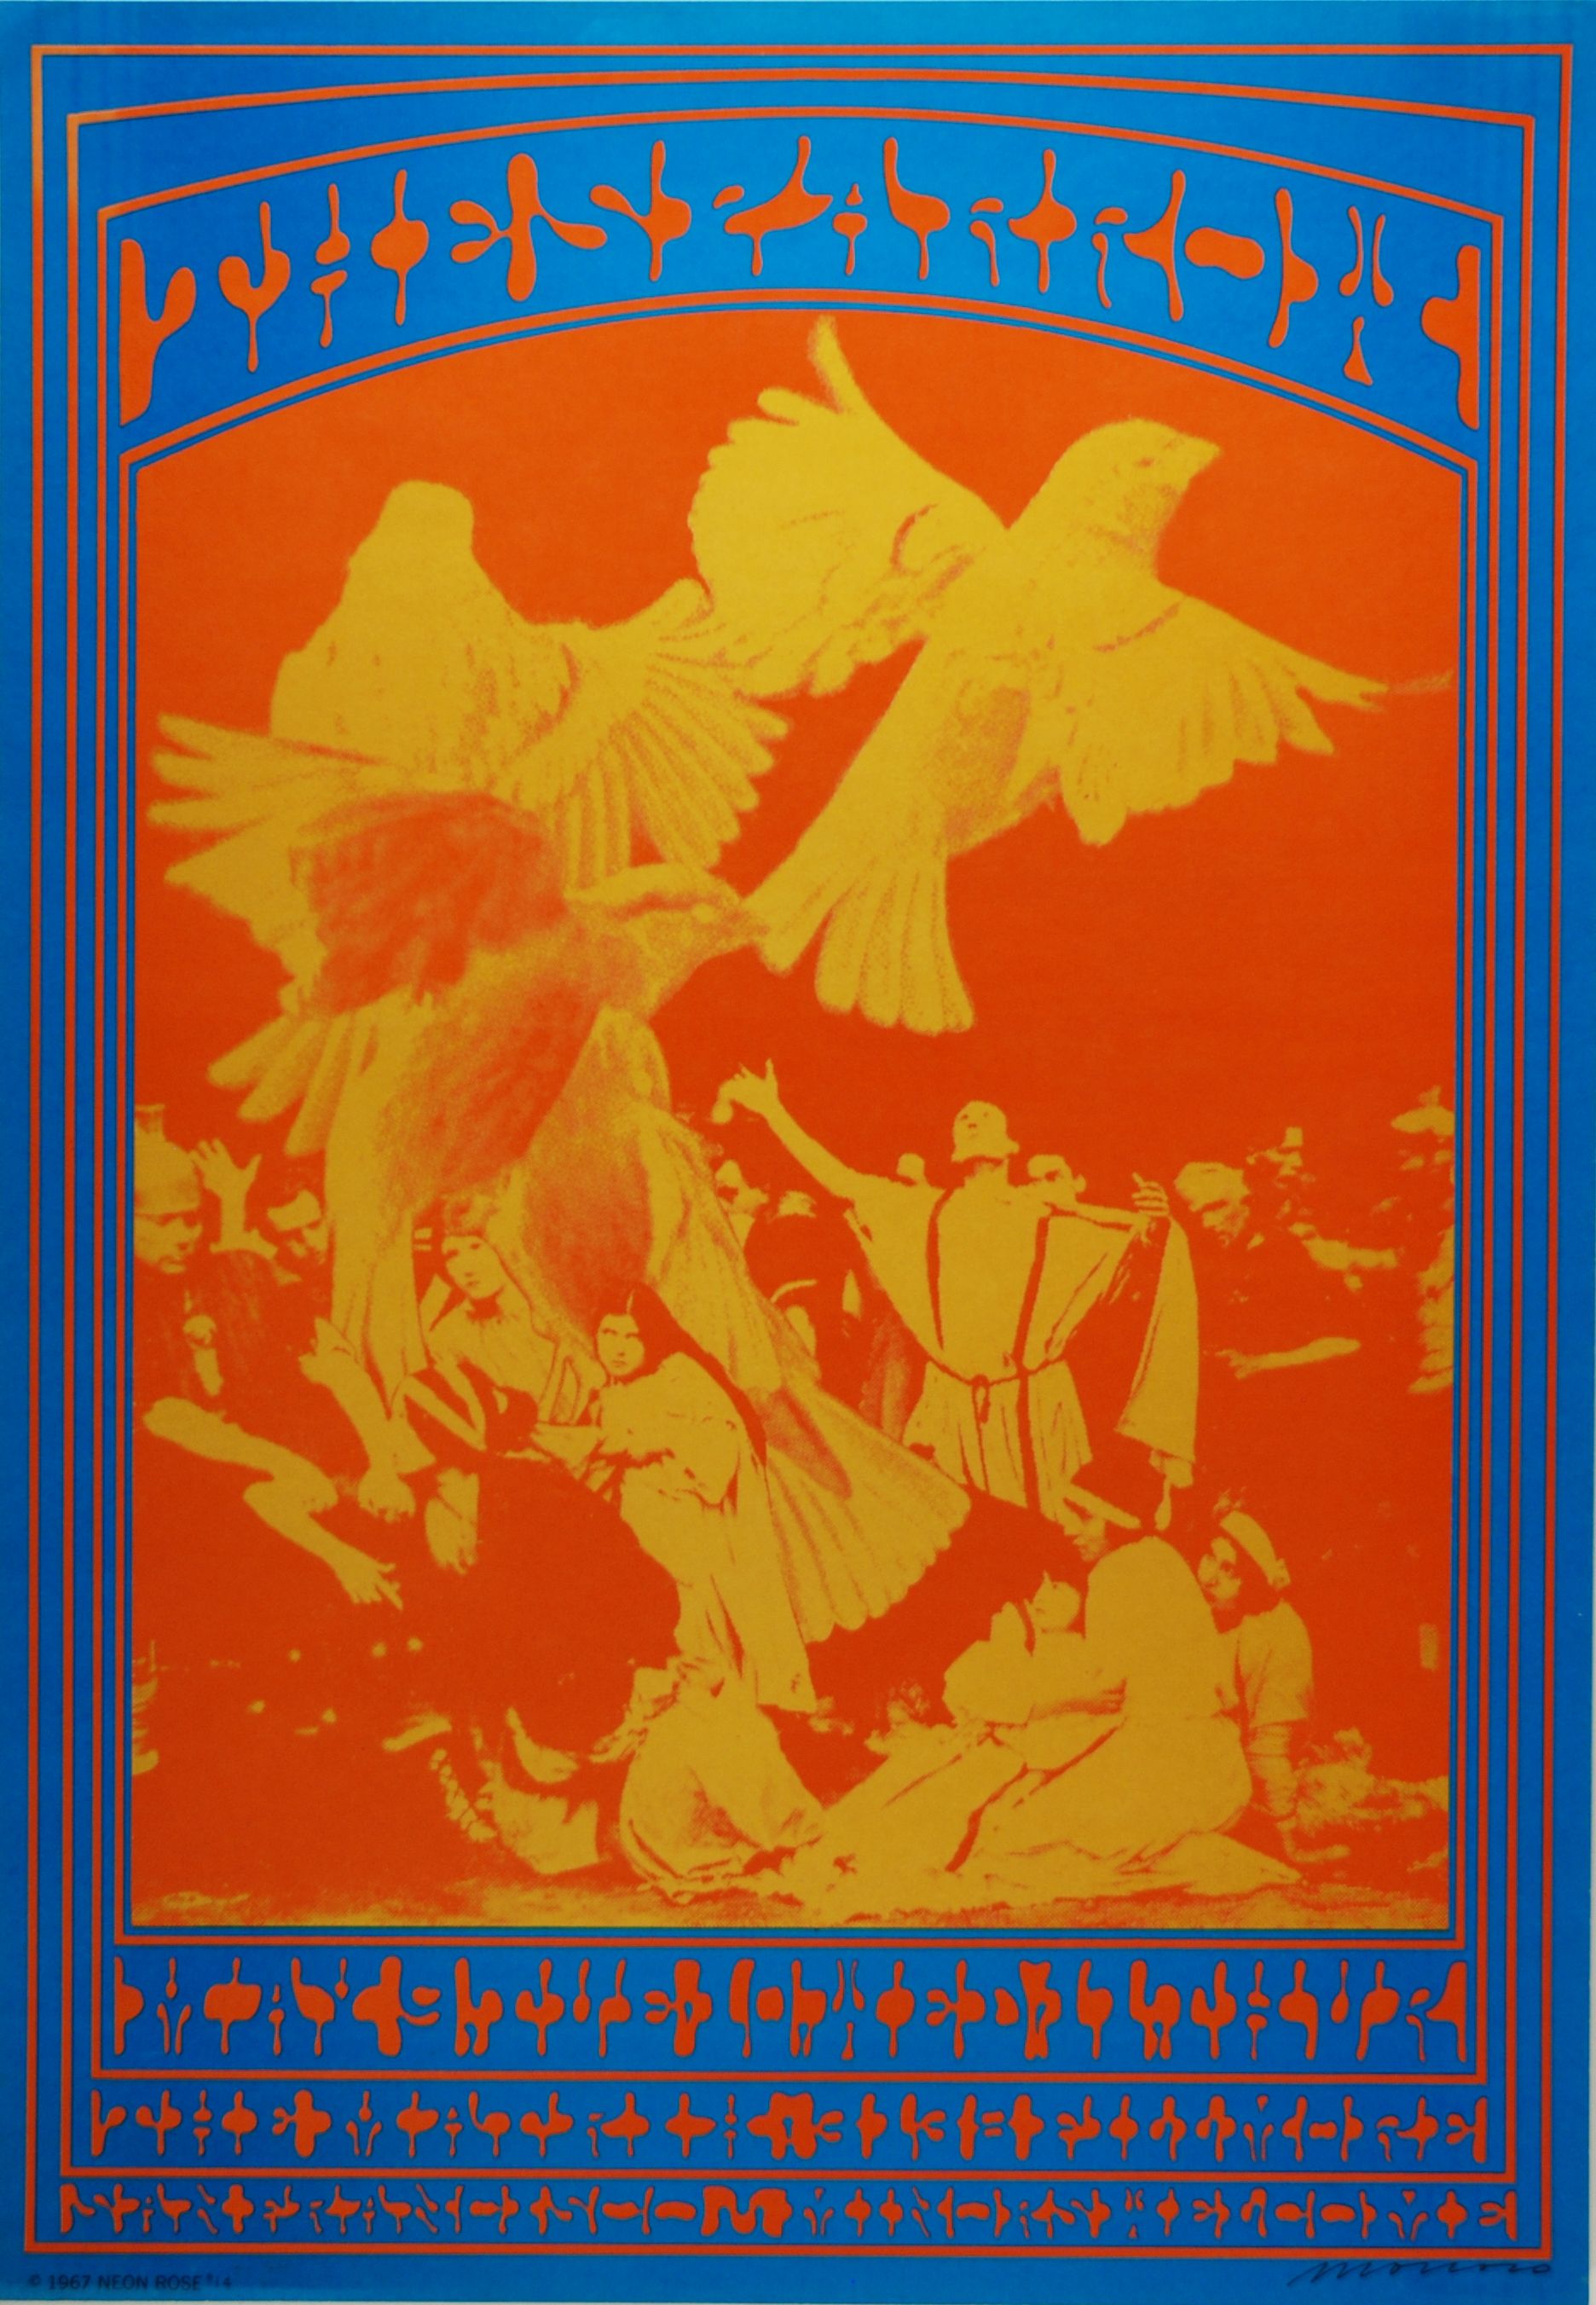 NR-14-OP-1 Concert Poster